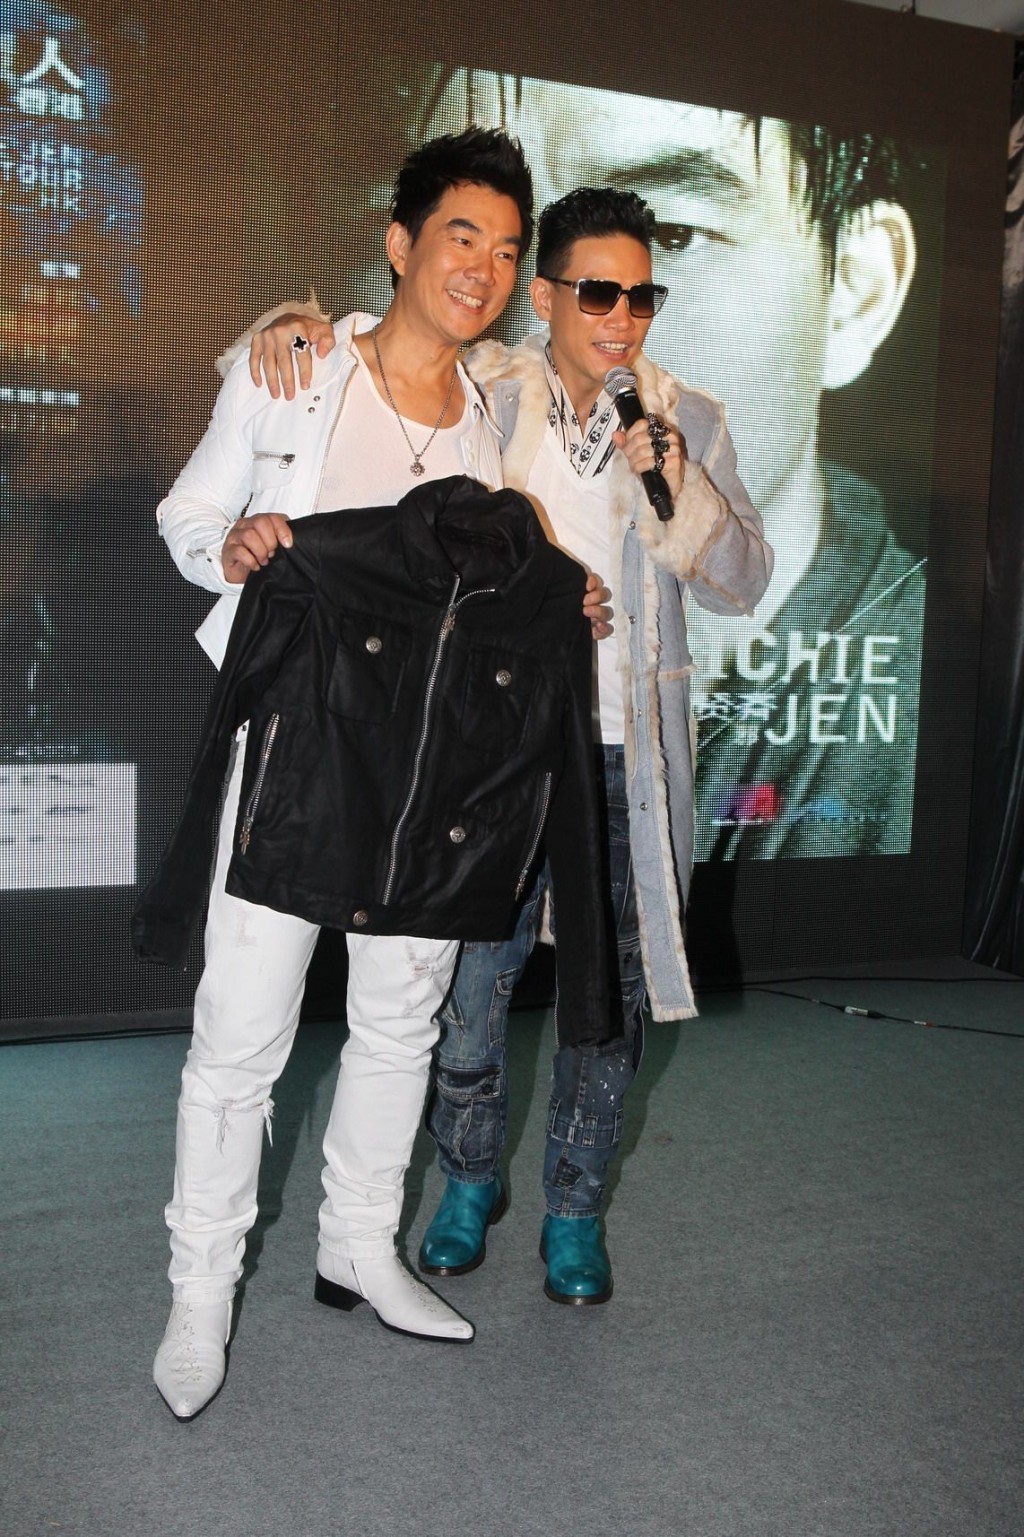 小齊對上一張唱片《不信邪》在2011年尾推出，當時在亞洲發佈會中更獲好友蘇永康送上皮褸。